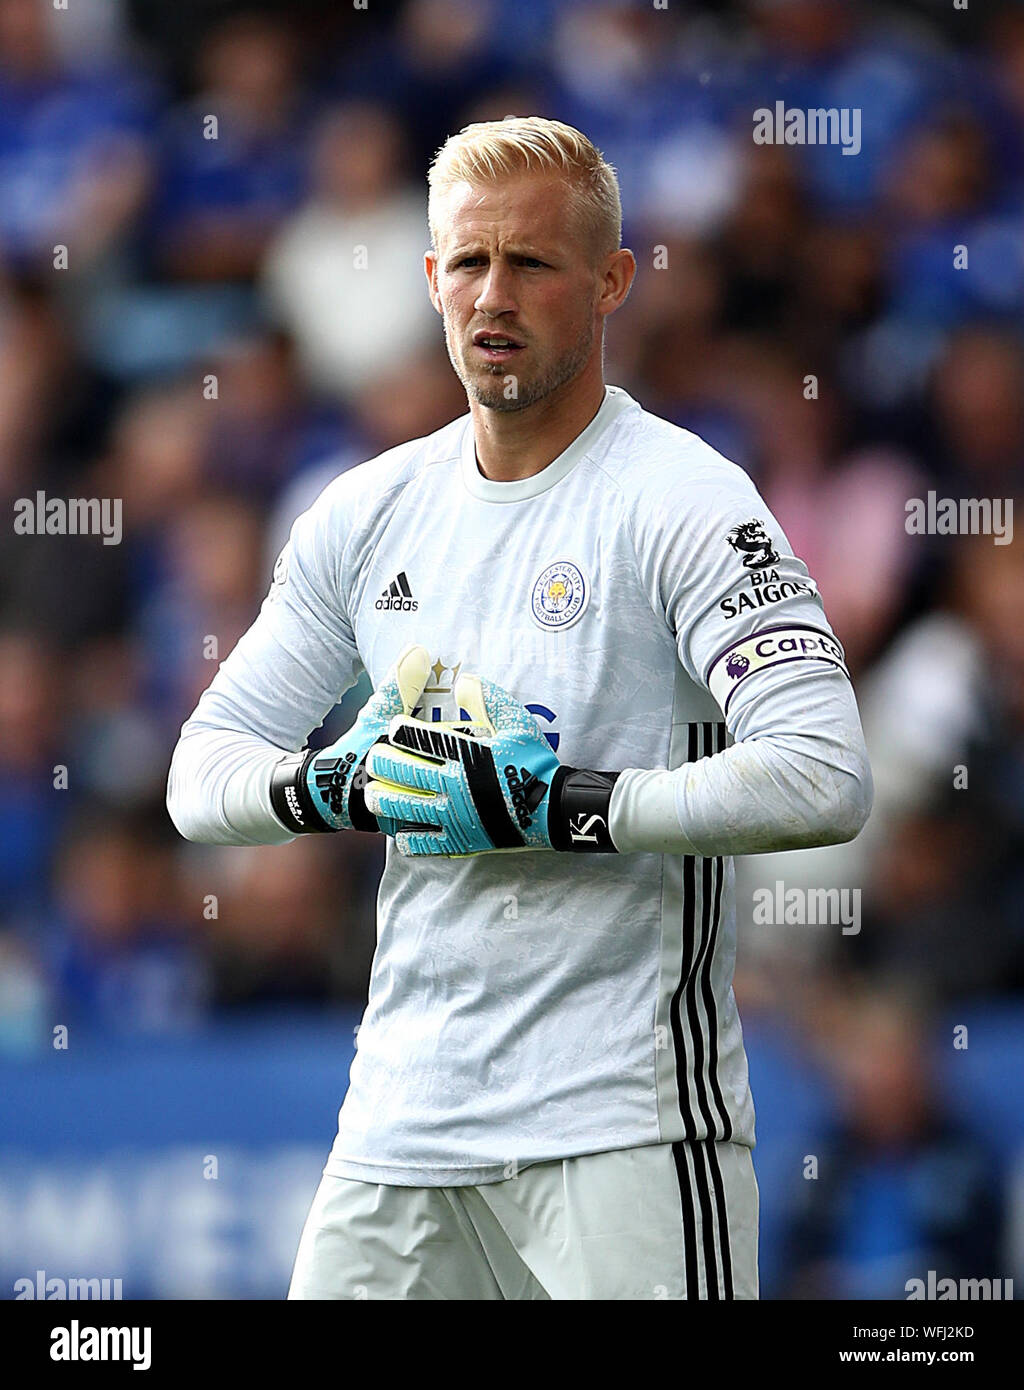 Leicester city goalkeeper immagini e fotografie stock ad alta risoluzione -  Alamy